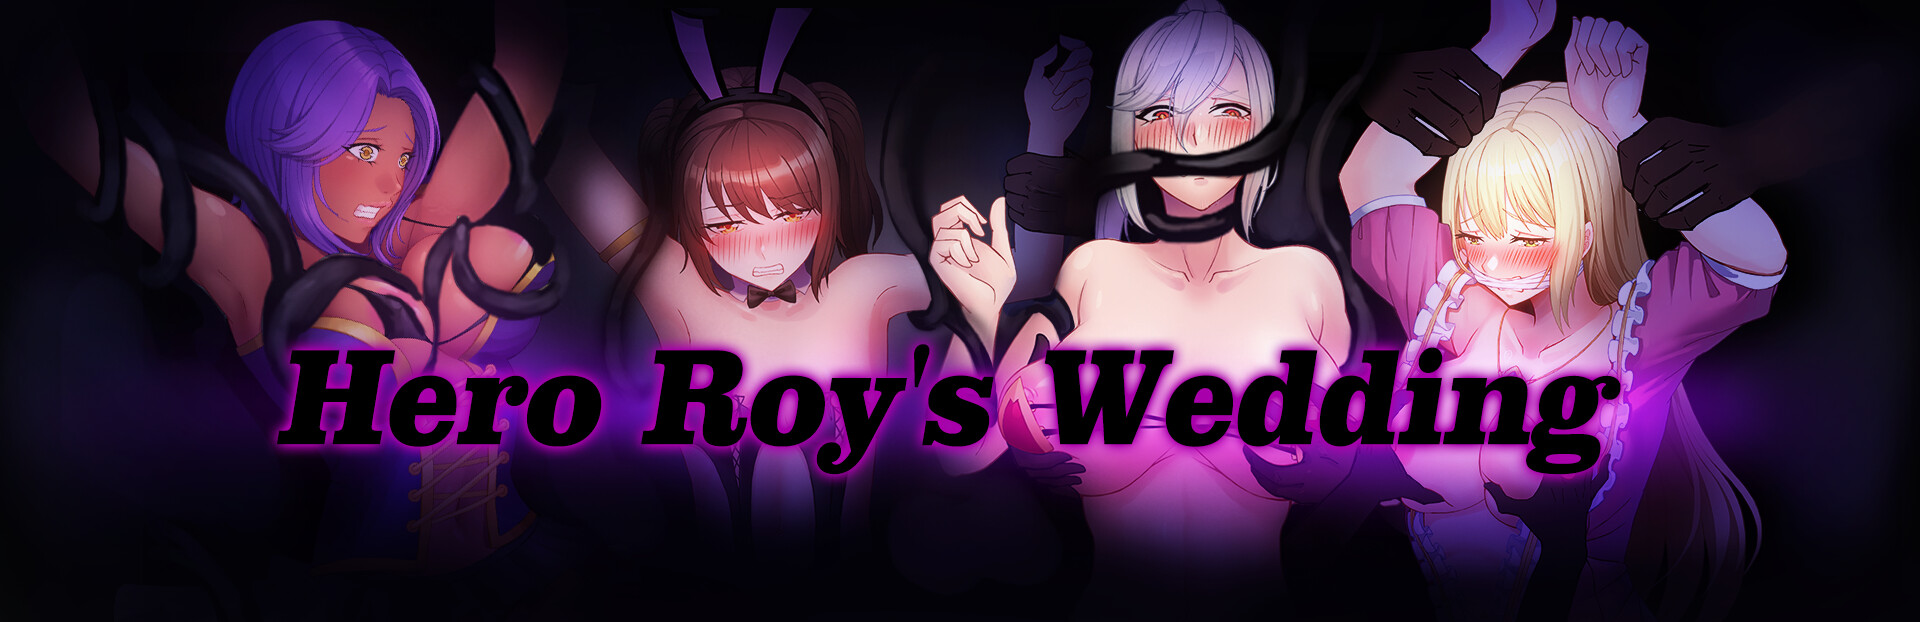 [18+ EN] Hero Roy’s Wedding – Đám Cưới Của Anh Hùng Roy | Android, PC